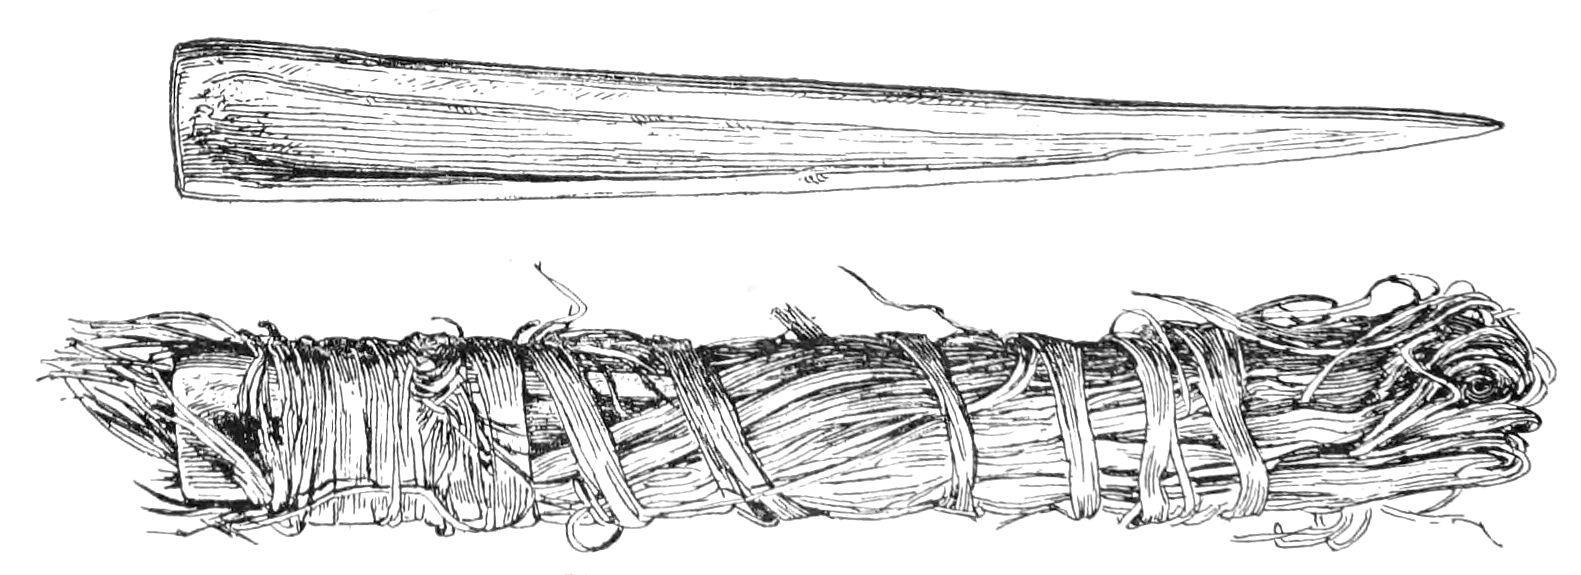 Fig. 32. Dirk and cedar-bark sheath